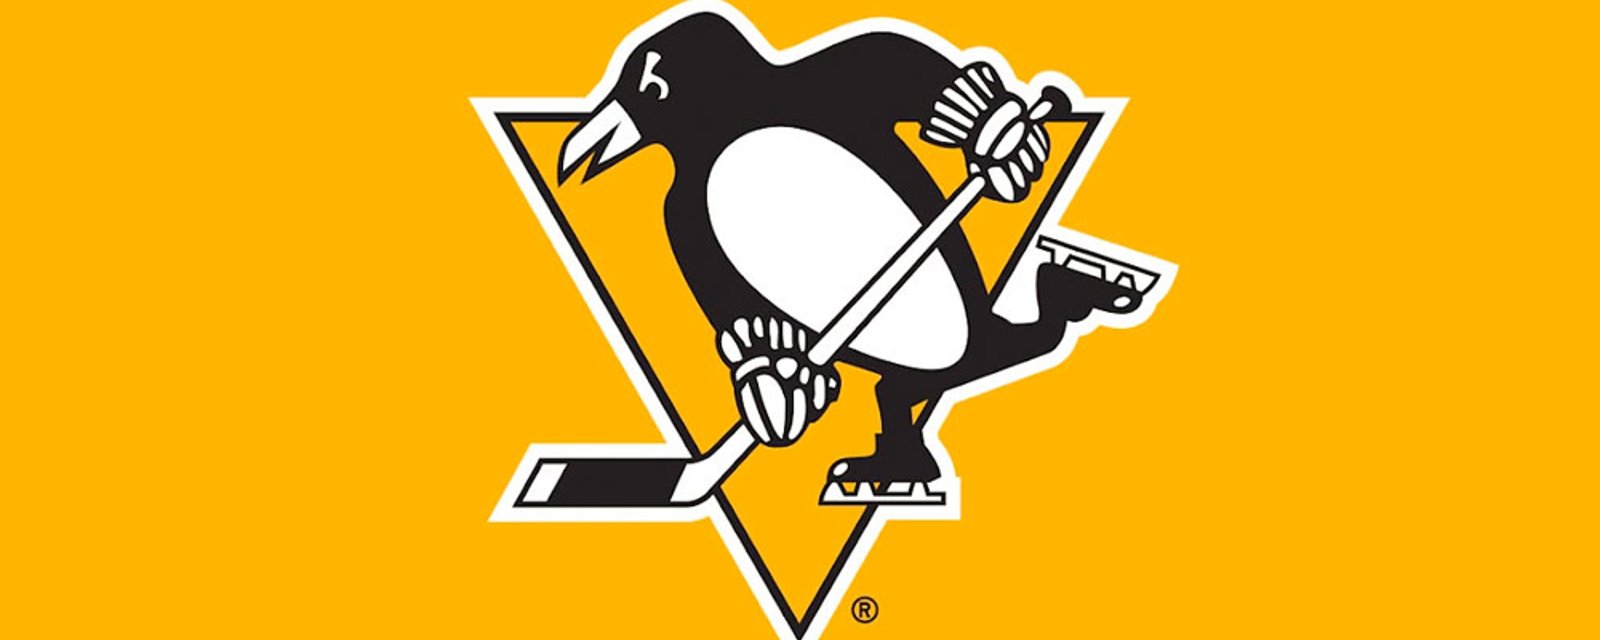 Penguins sign former Oilers defenseman